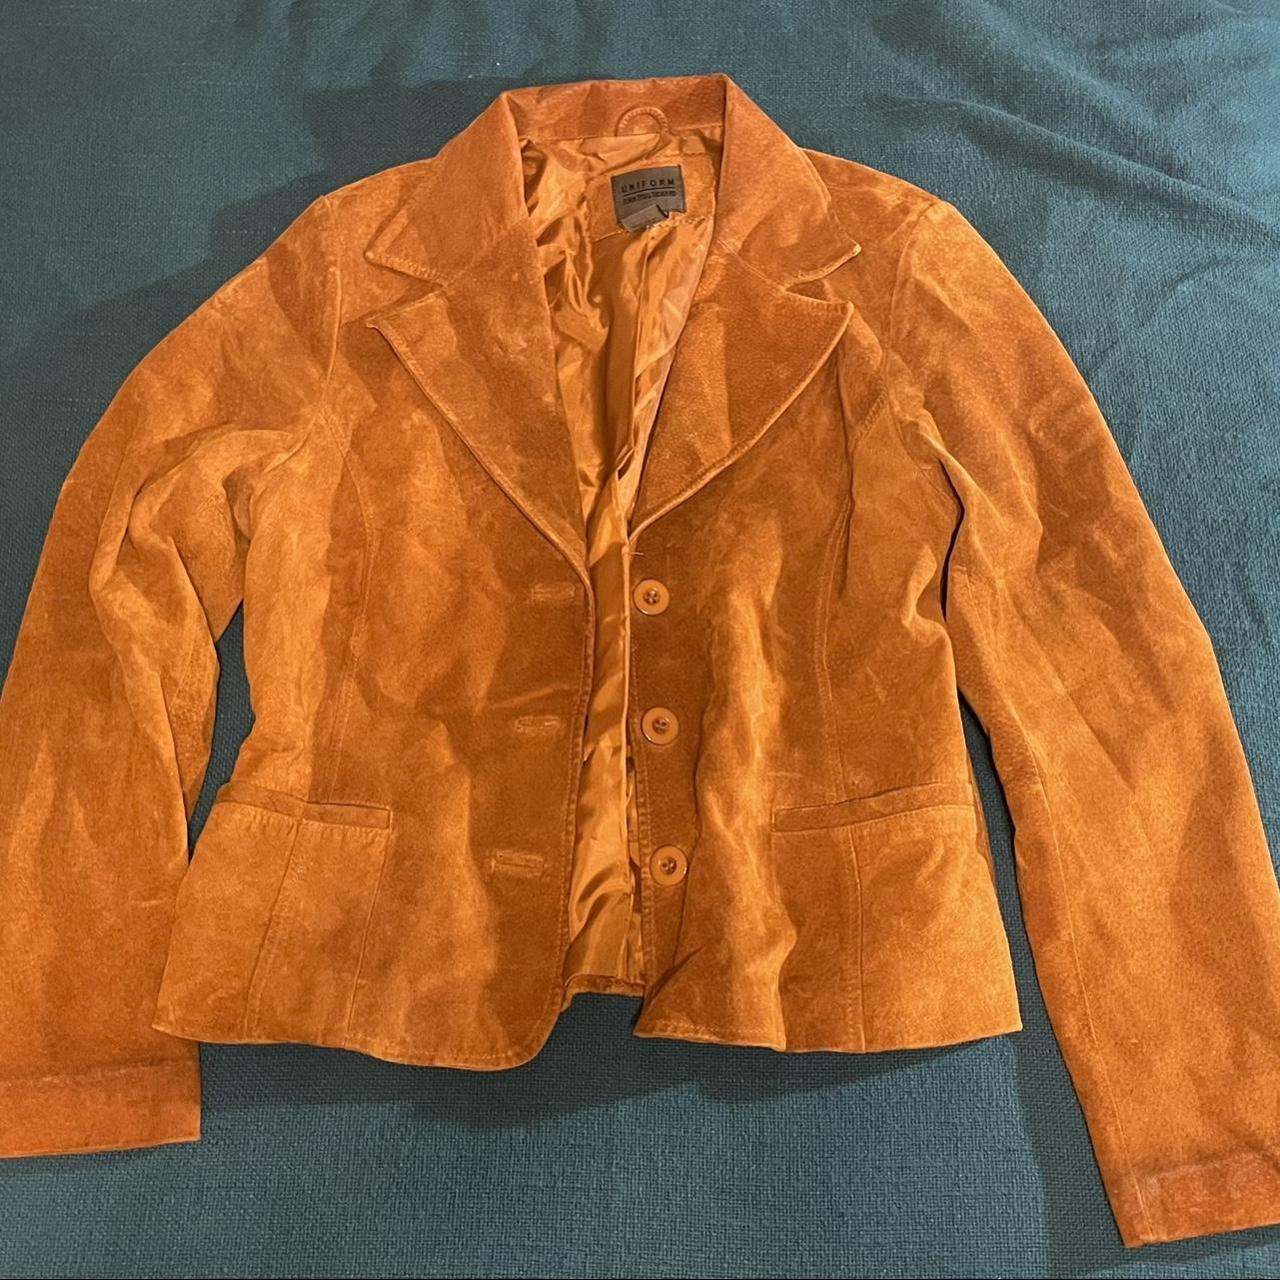 John Paul Richard Women's Orange and Brown Jacket